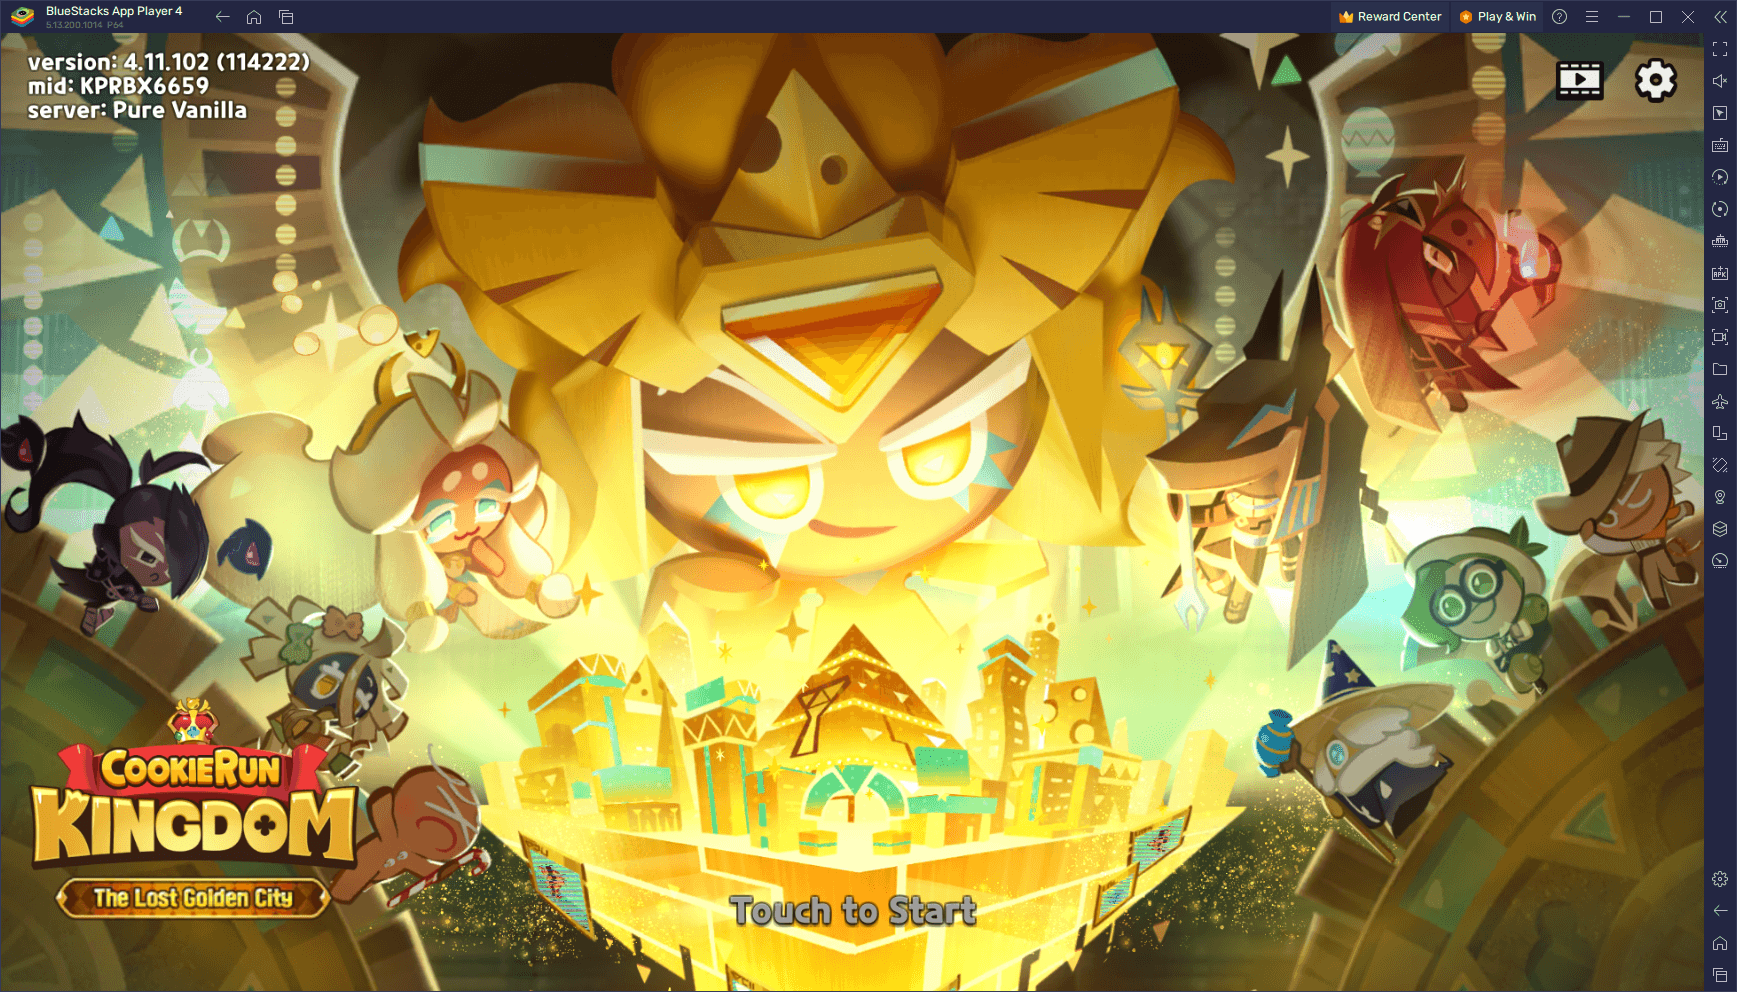 Cookie Run: Kingdom Version 5.0 Update - "The Lost Golden City" Details